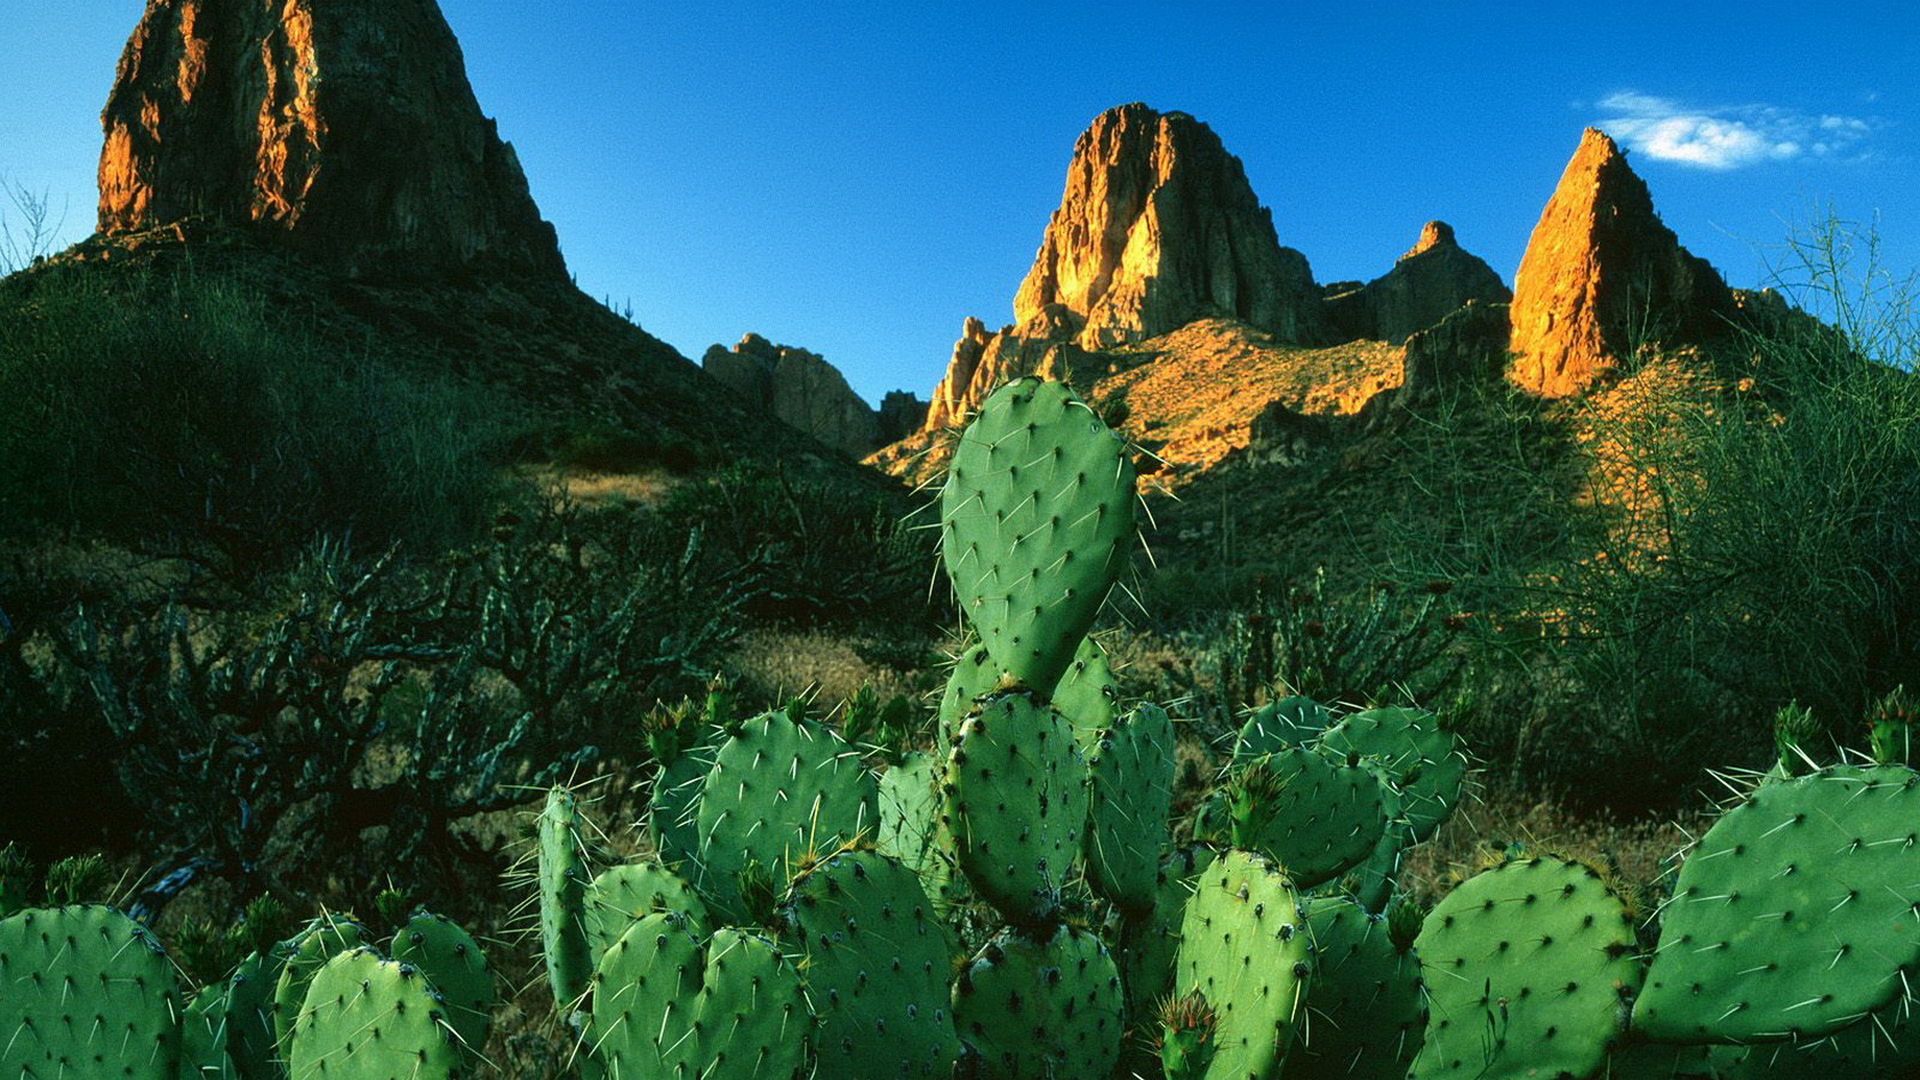 mountains, landscapes, rocks, cactus - desktop wallpaper